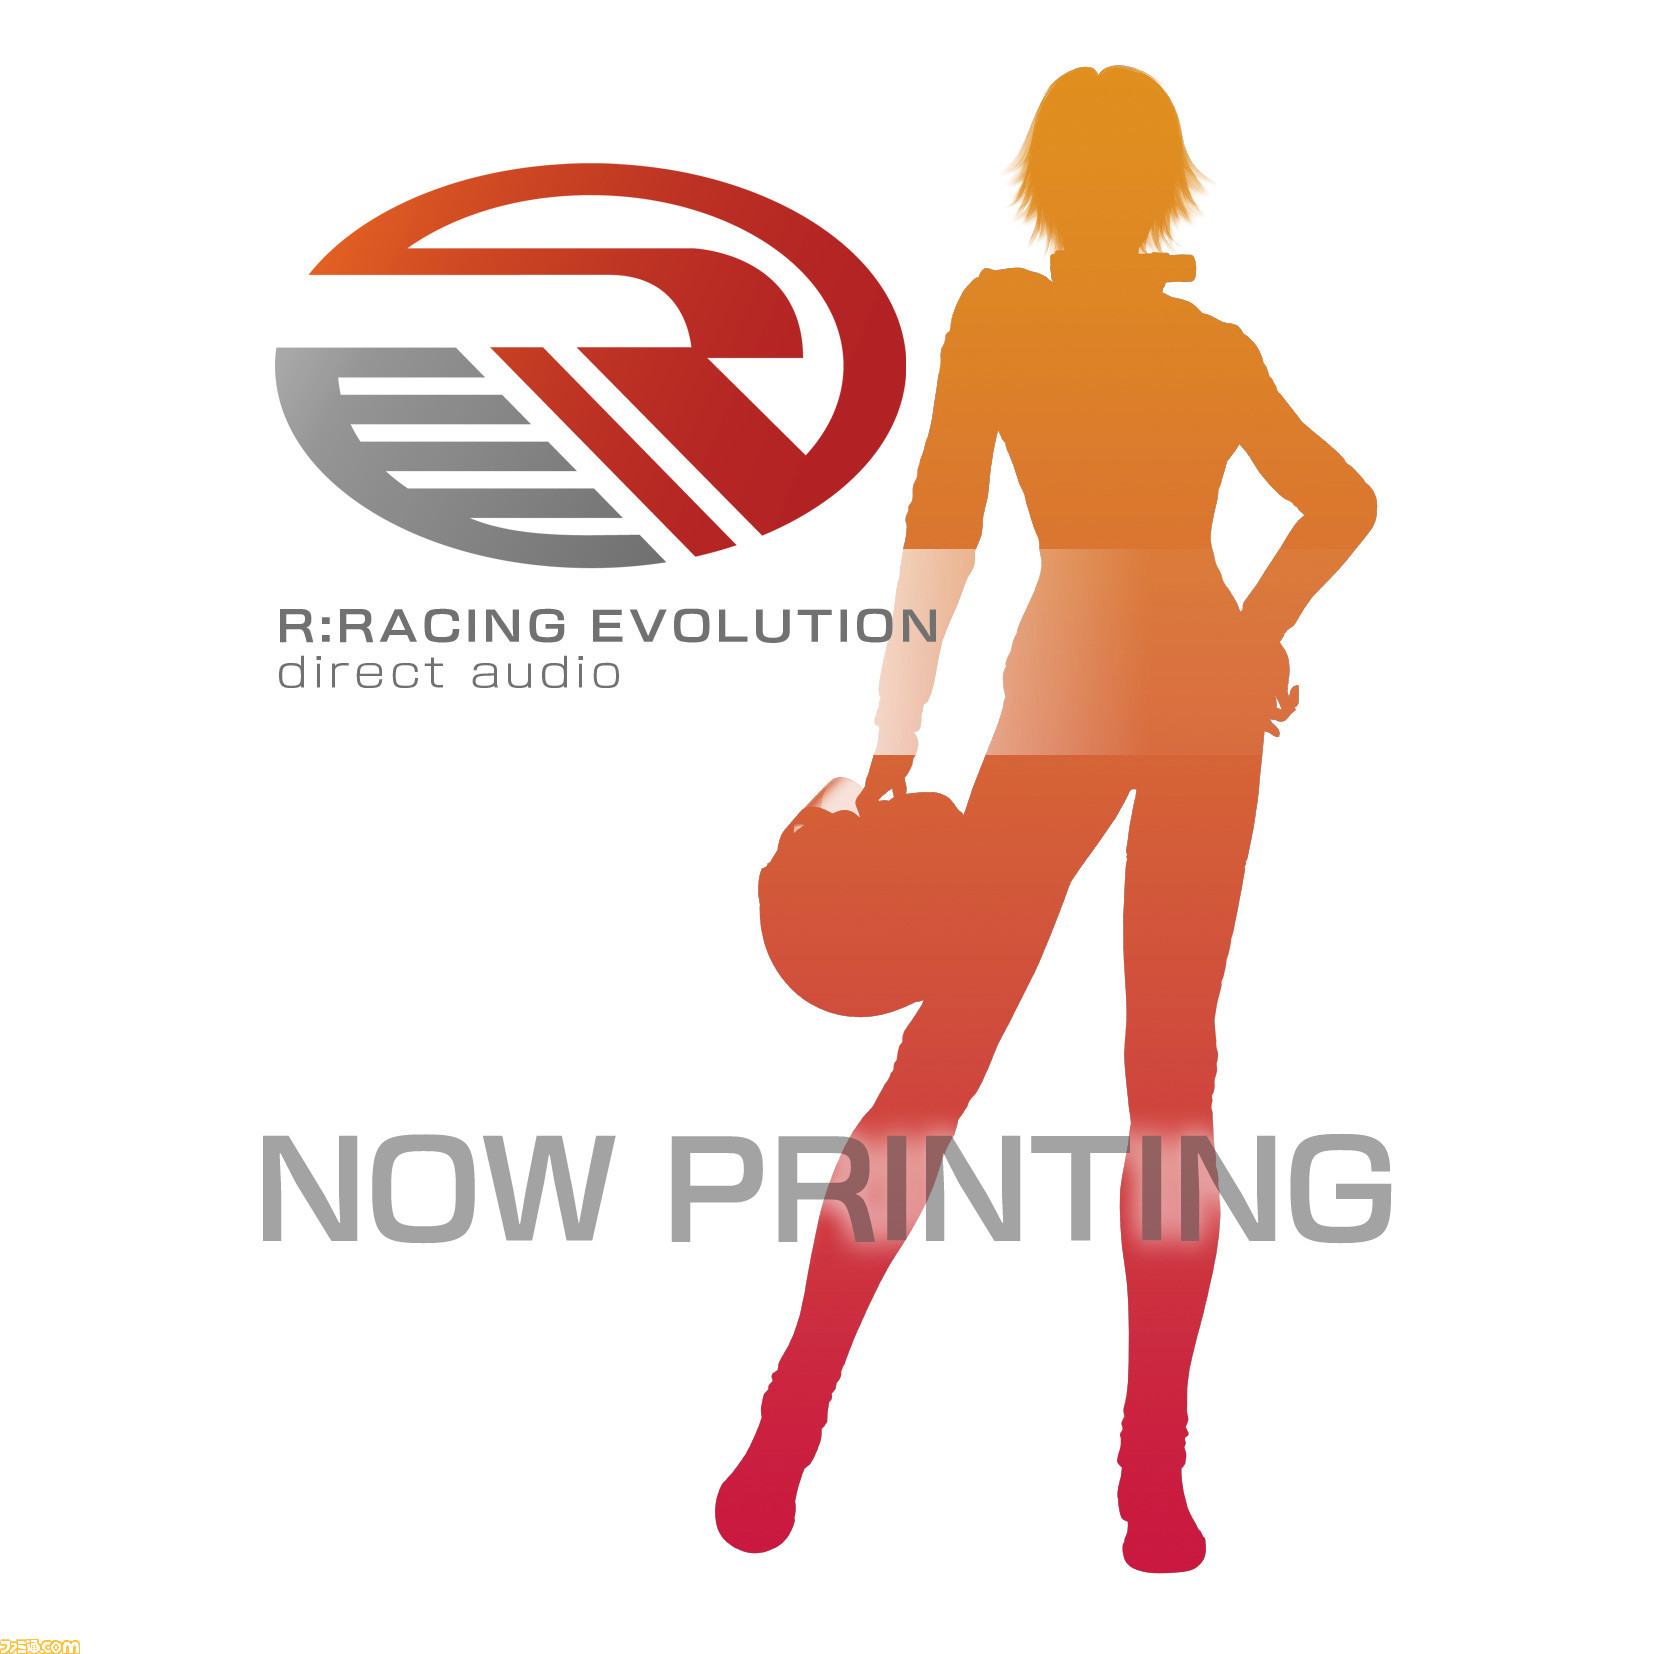 R:RACING EVOLUTION』のサントラCDが9月19日発売決定、“『リッジ